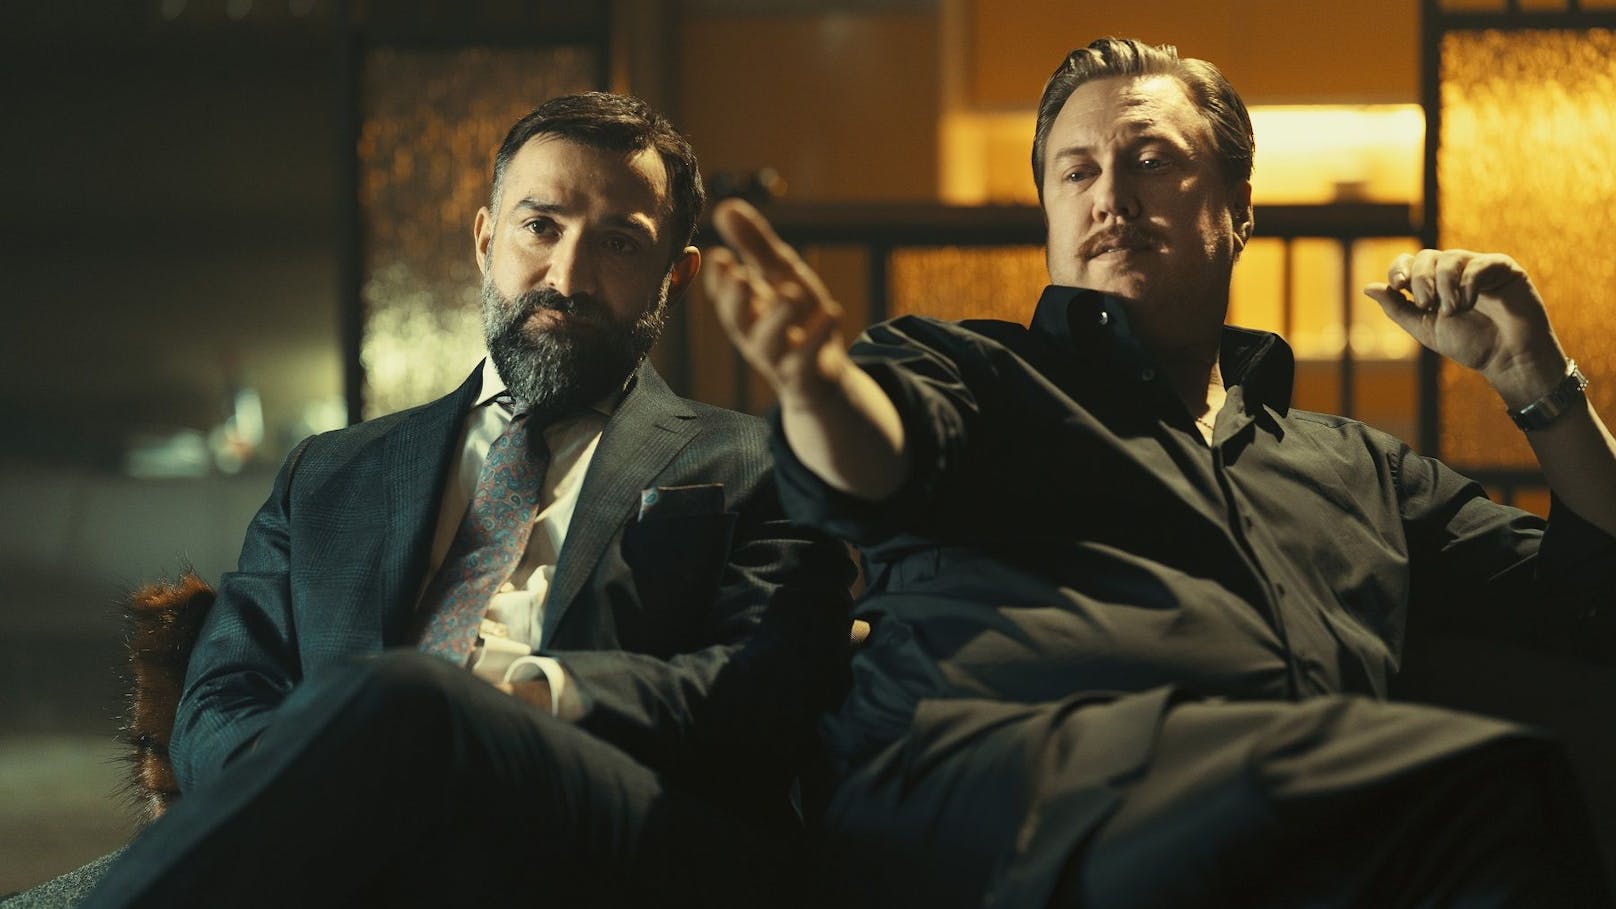 Nicholas Ofczarek als Privatdetektiv Julian Hessenthaler mit dem Wiener Anwalt Ramin Mirfakhrai (David A. Hamade) in "Die Ibiza Affäre"